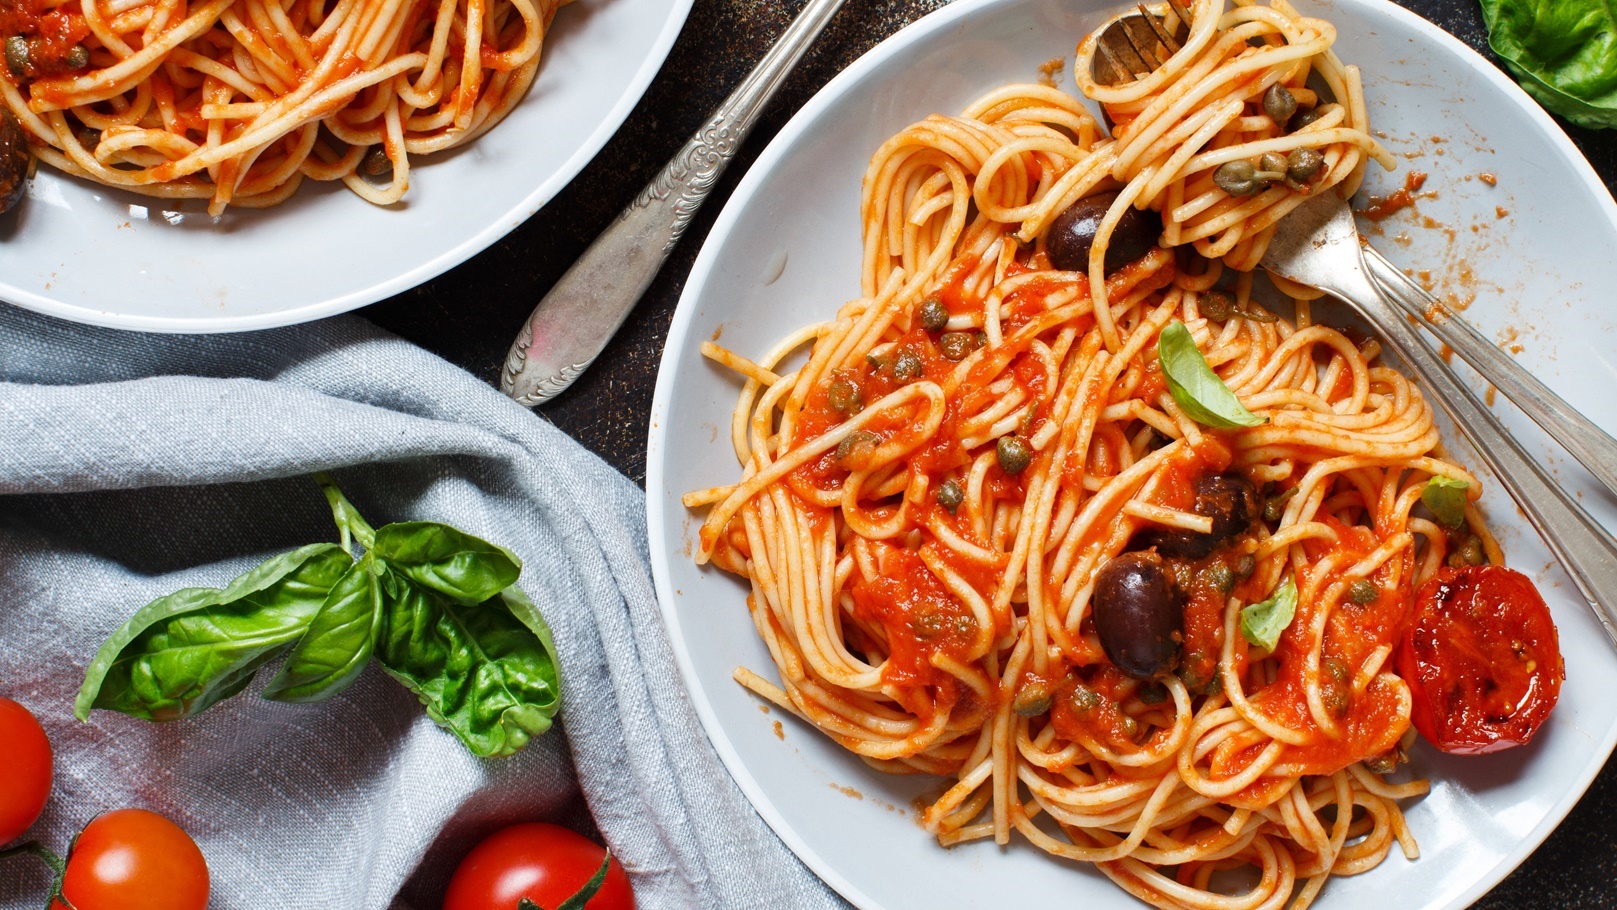 pasta-alla-puttanesca-spaghetti-with-tomato-sauc-2021-08-26-15-47-07-utc